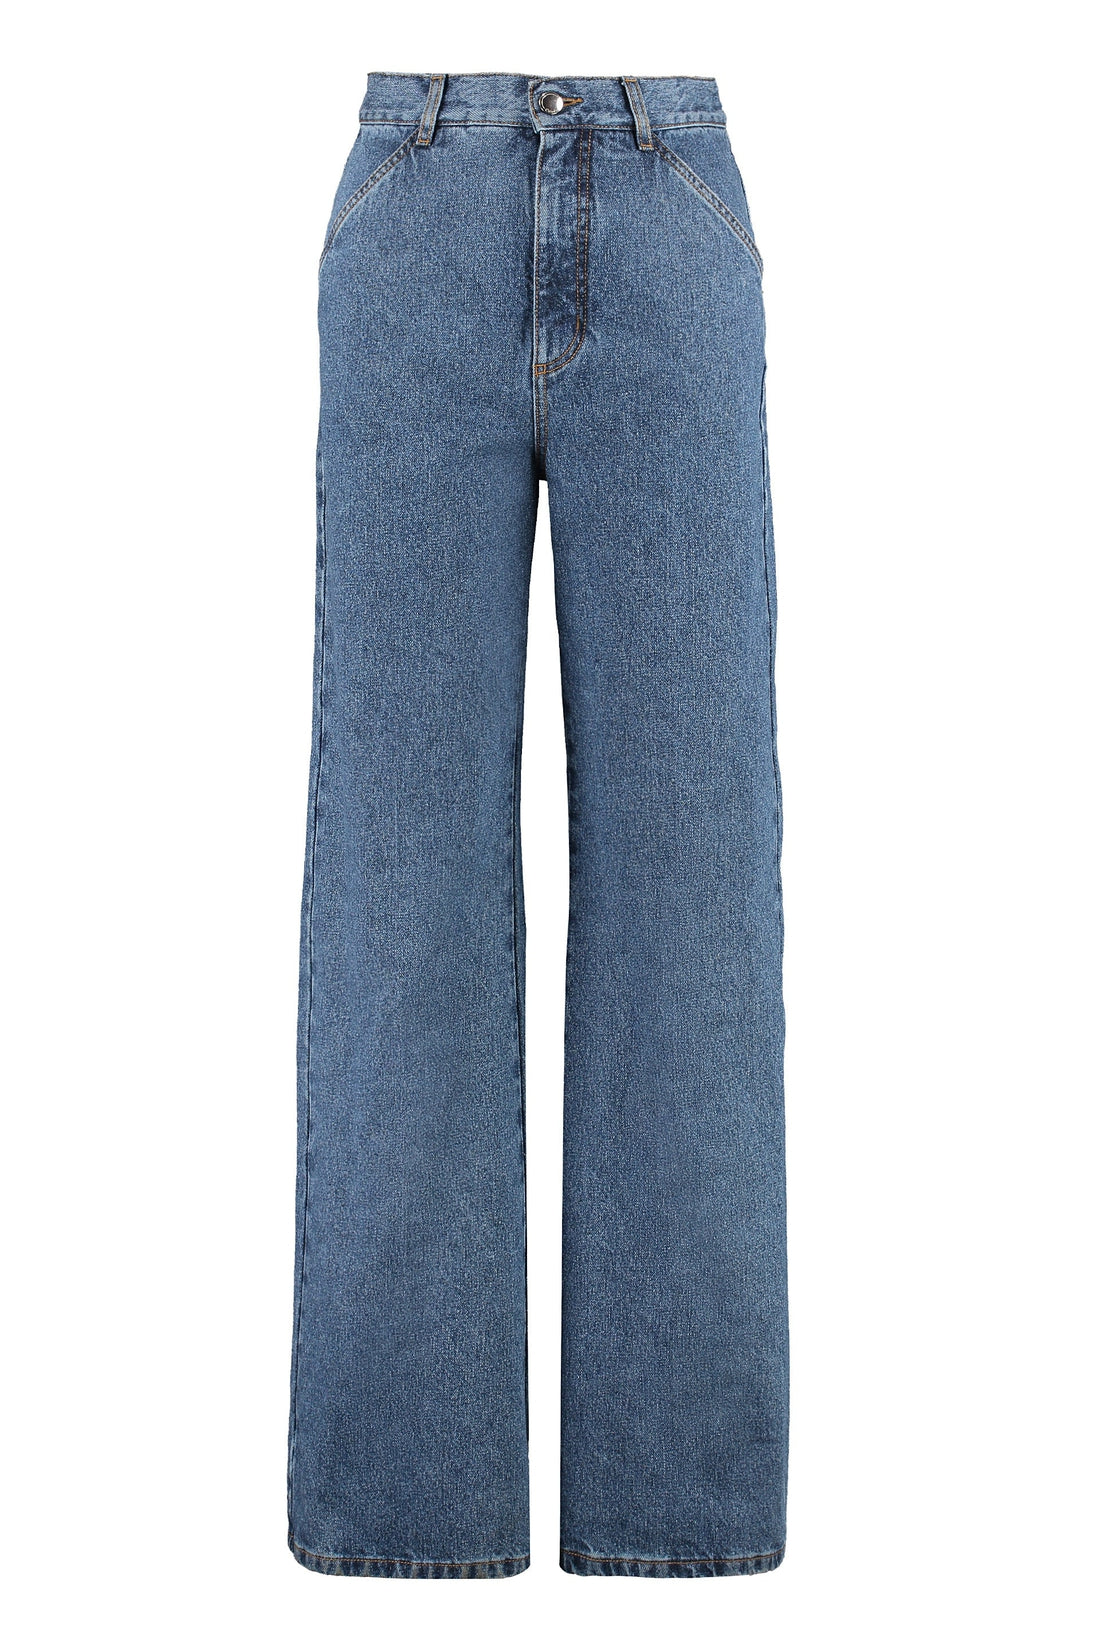 Chloé-OUTLET-SALE-High-waist wide-leg jeans-ARCHIVIST